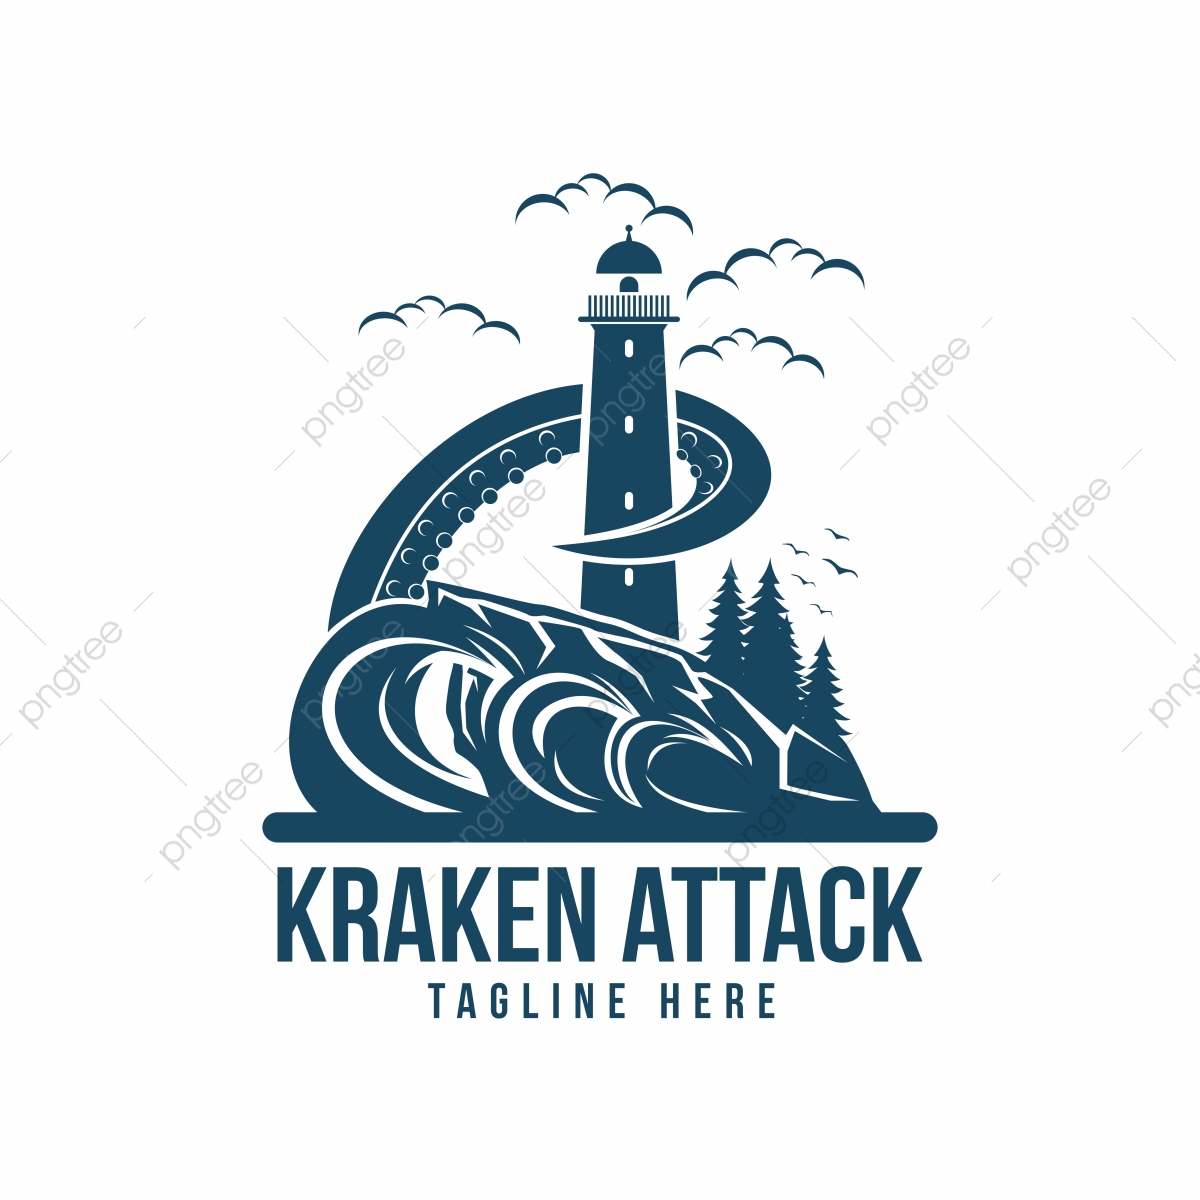 Kraken Logo Vector at Vectorified.com | Collection of ...